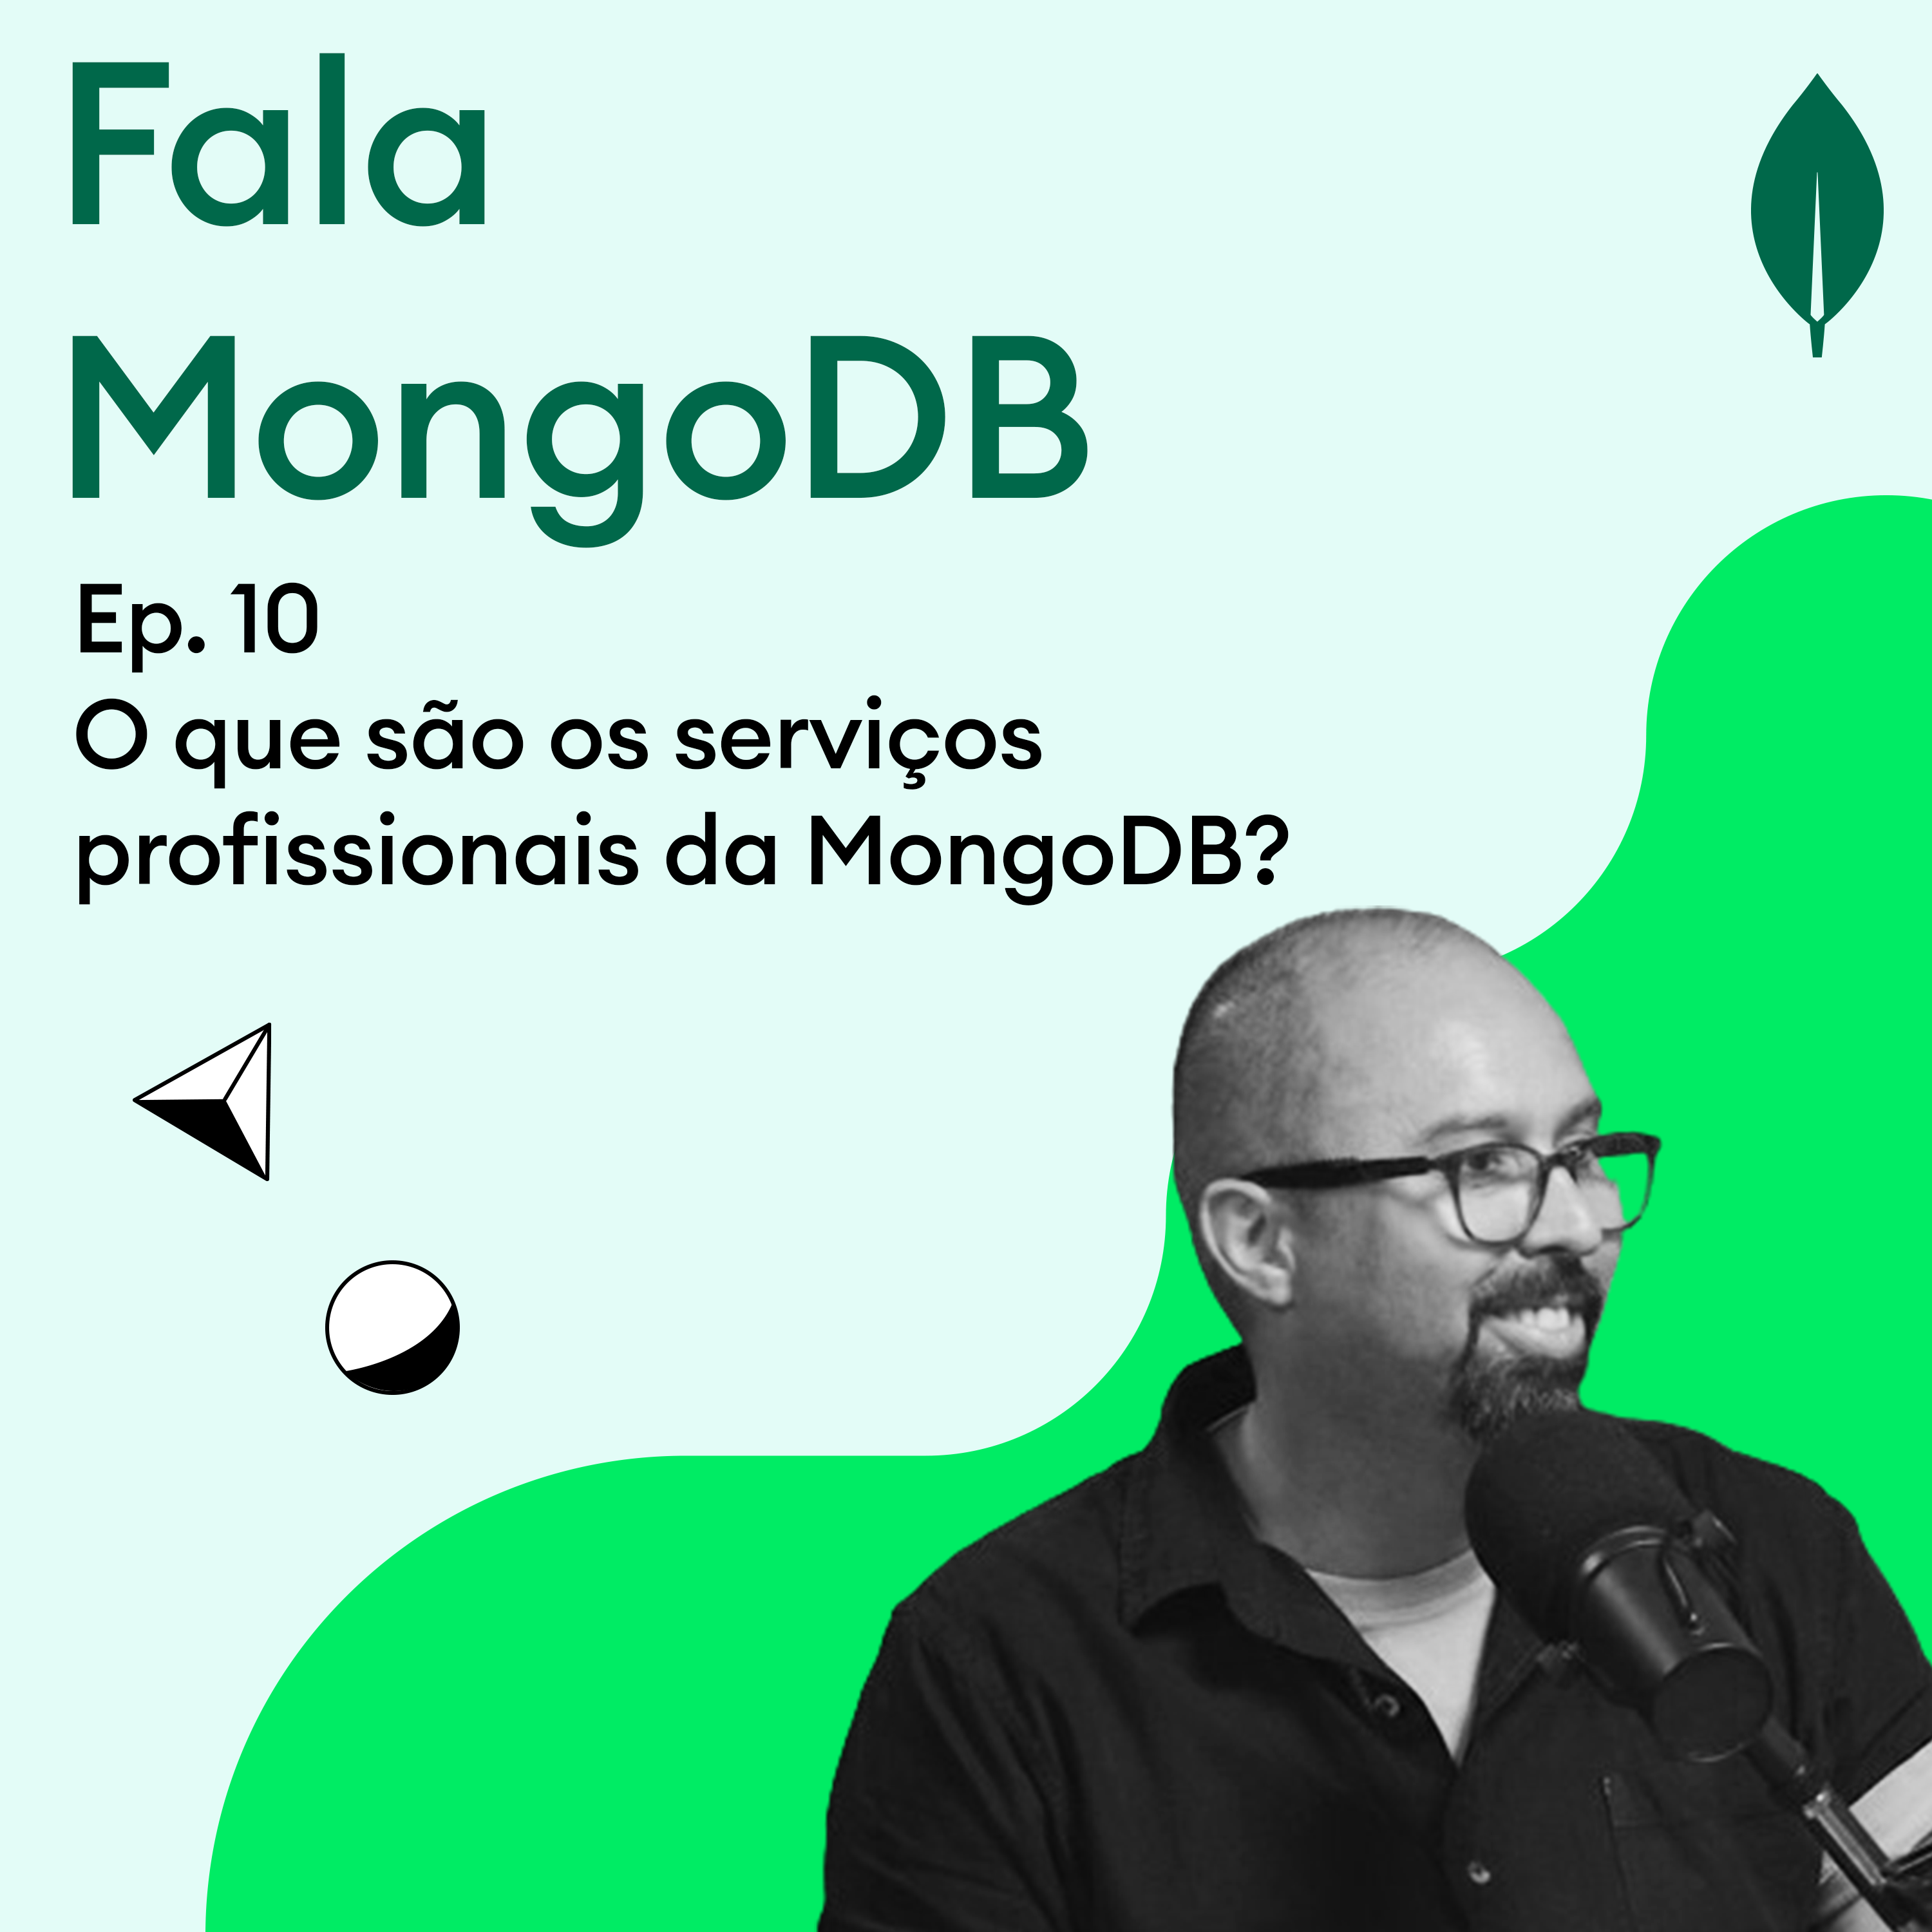 Fala MongoDB Ep. 10 O que são os serviços profissionais da MongoDB?